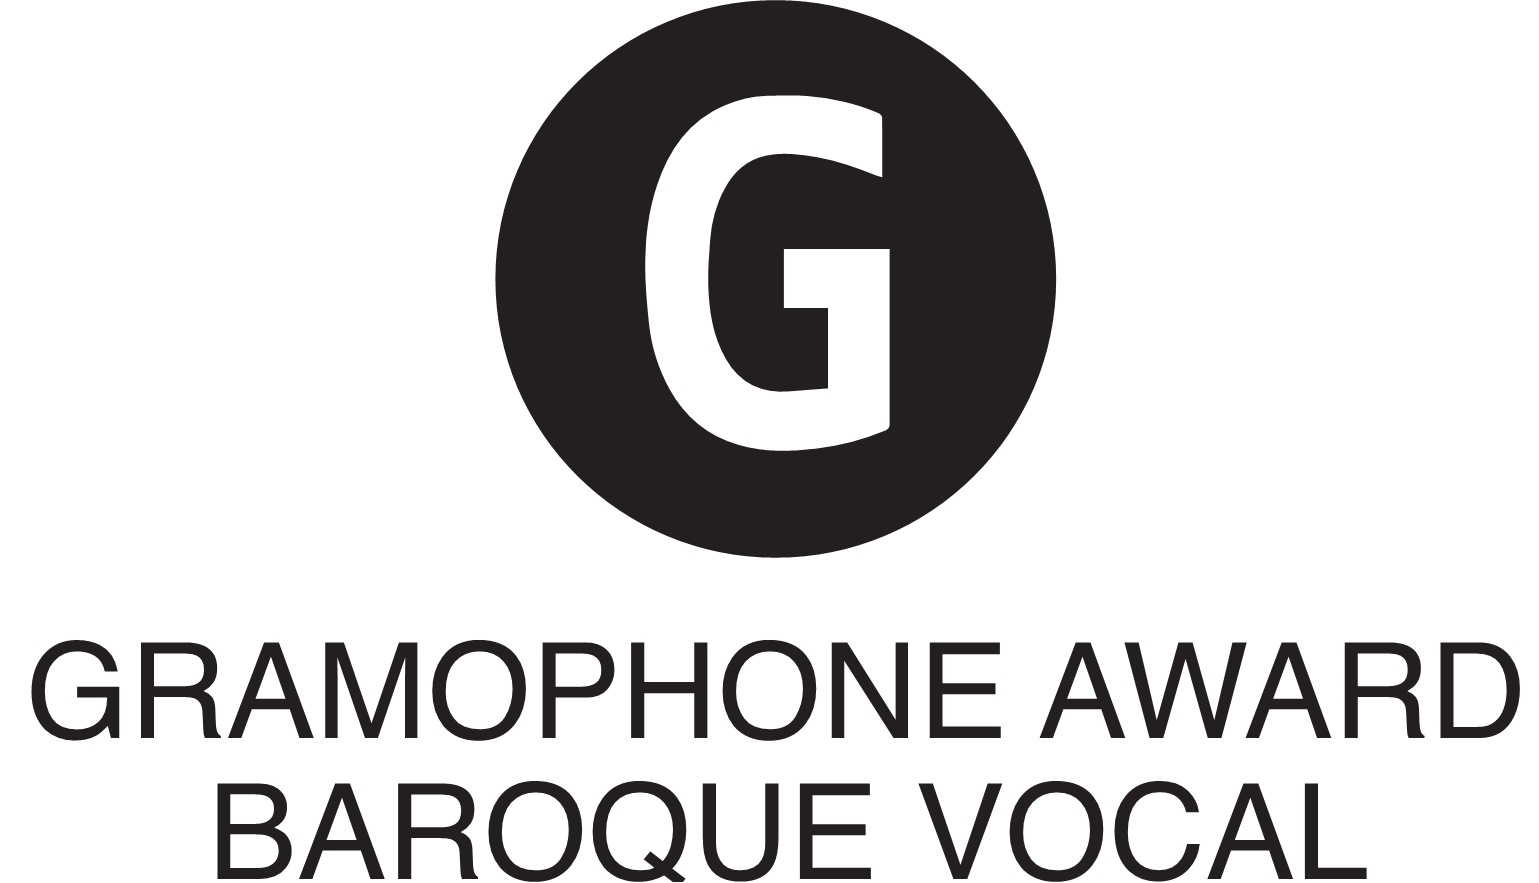 Gramophone Award: 'Baroque Vocal' (2012)